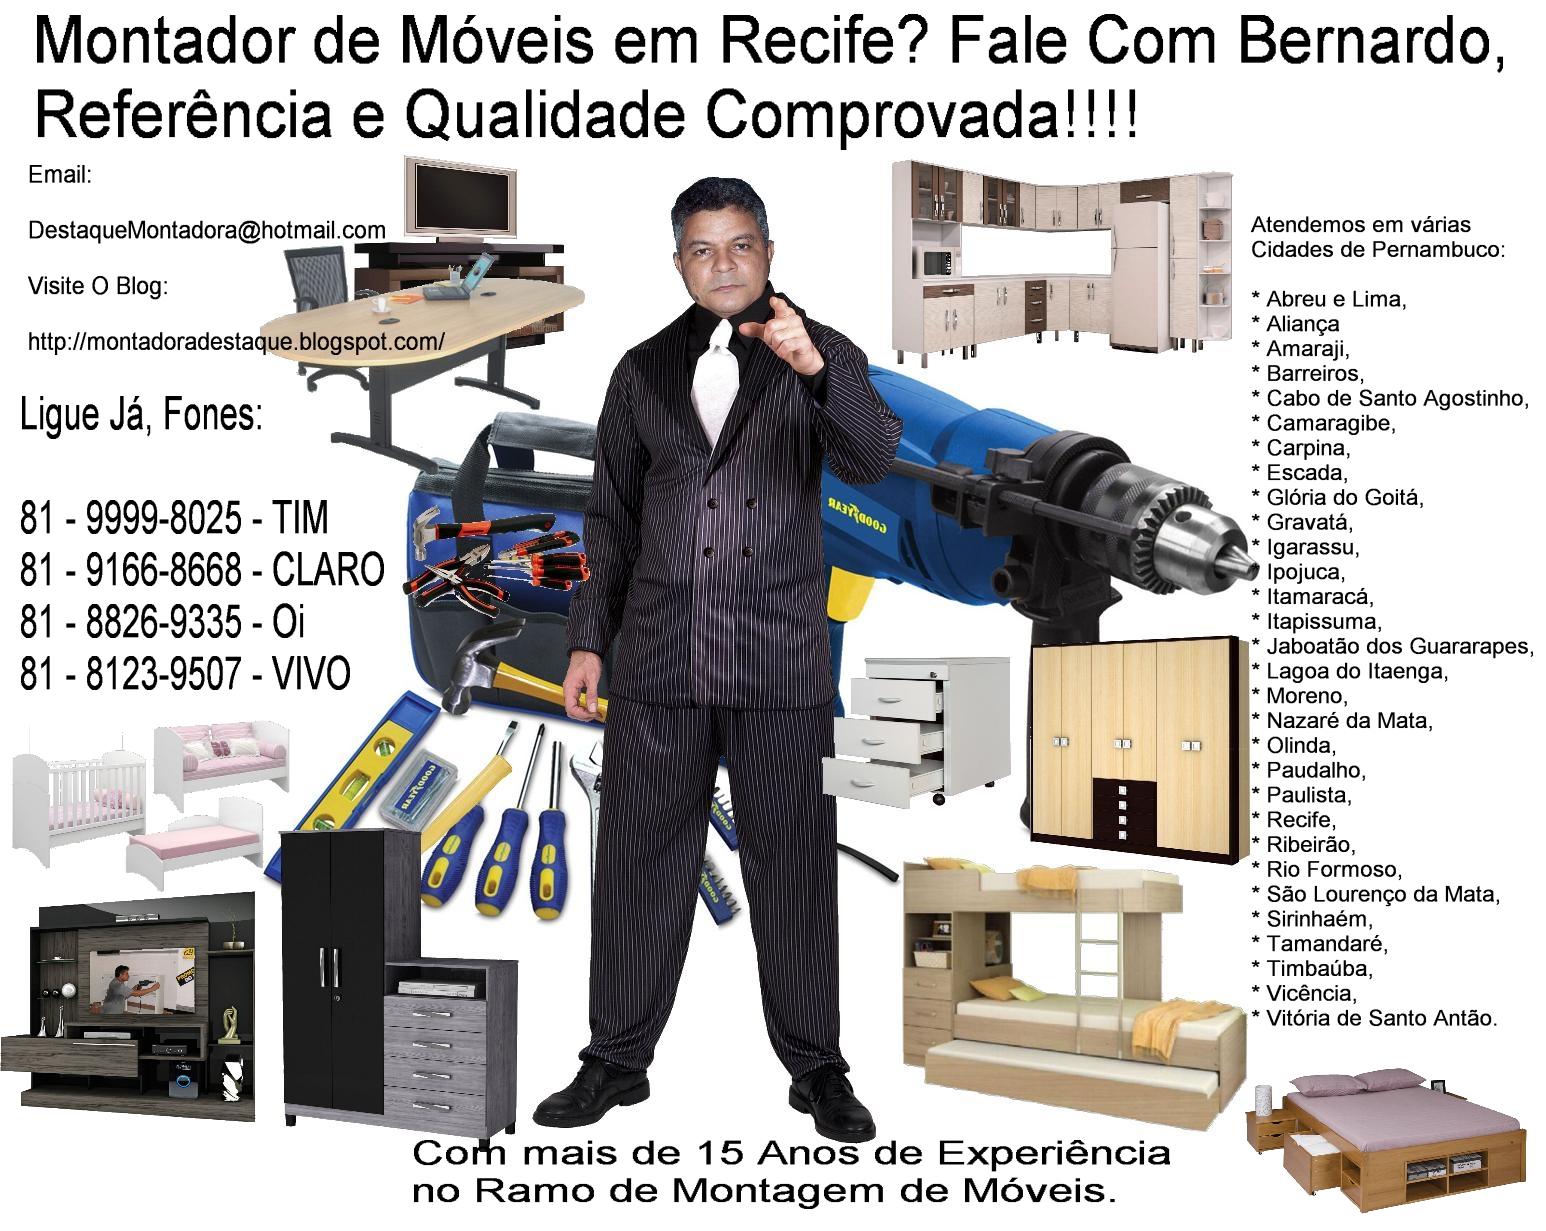 Montador de Móveis em Recife Roupeiro Caribe Manbel Com 3